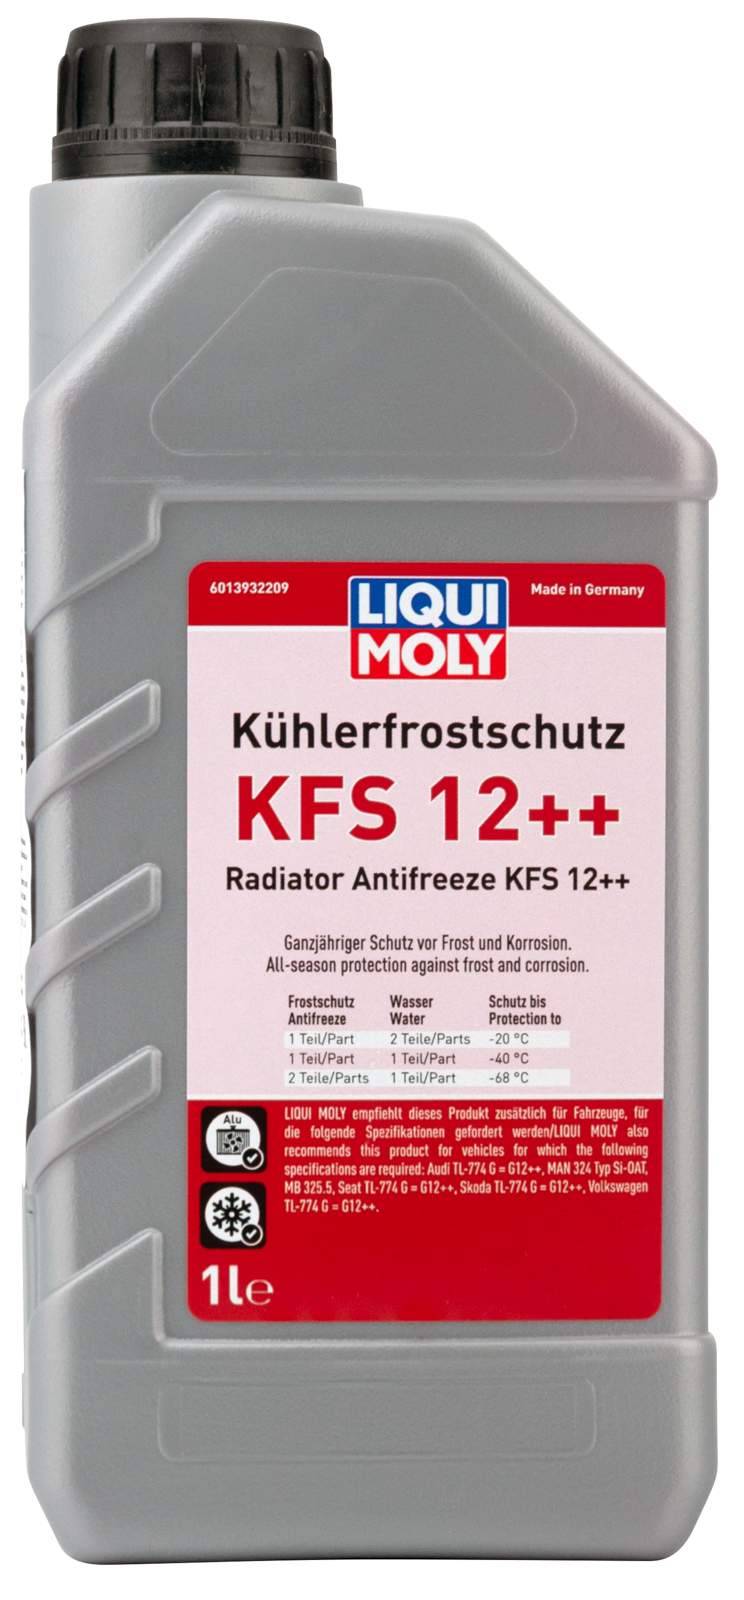 Kühlerfrostschutz KFS 13